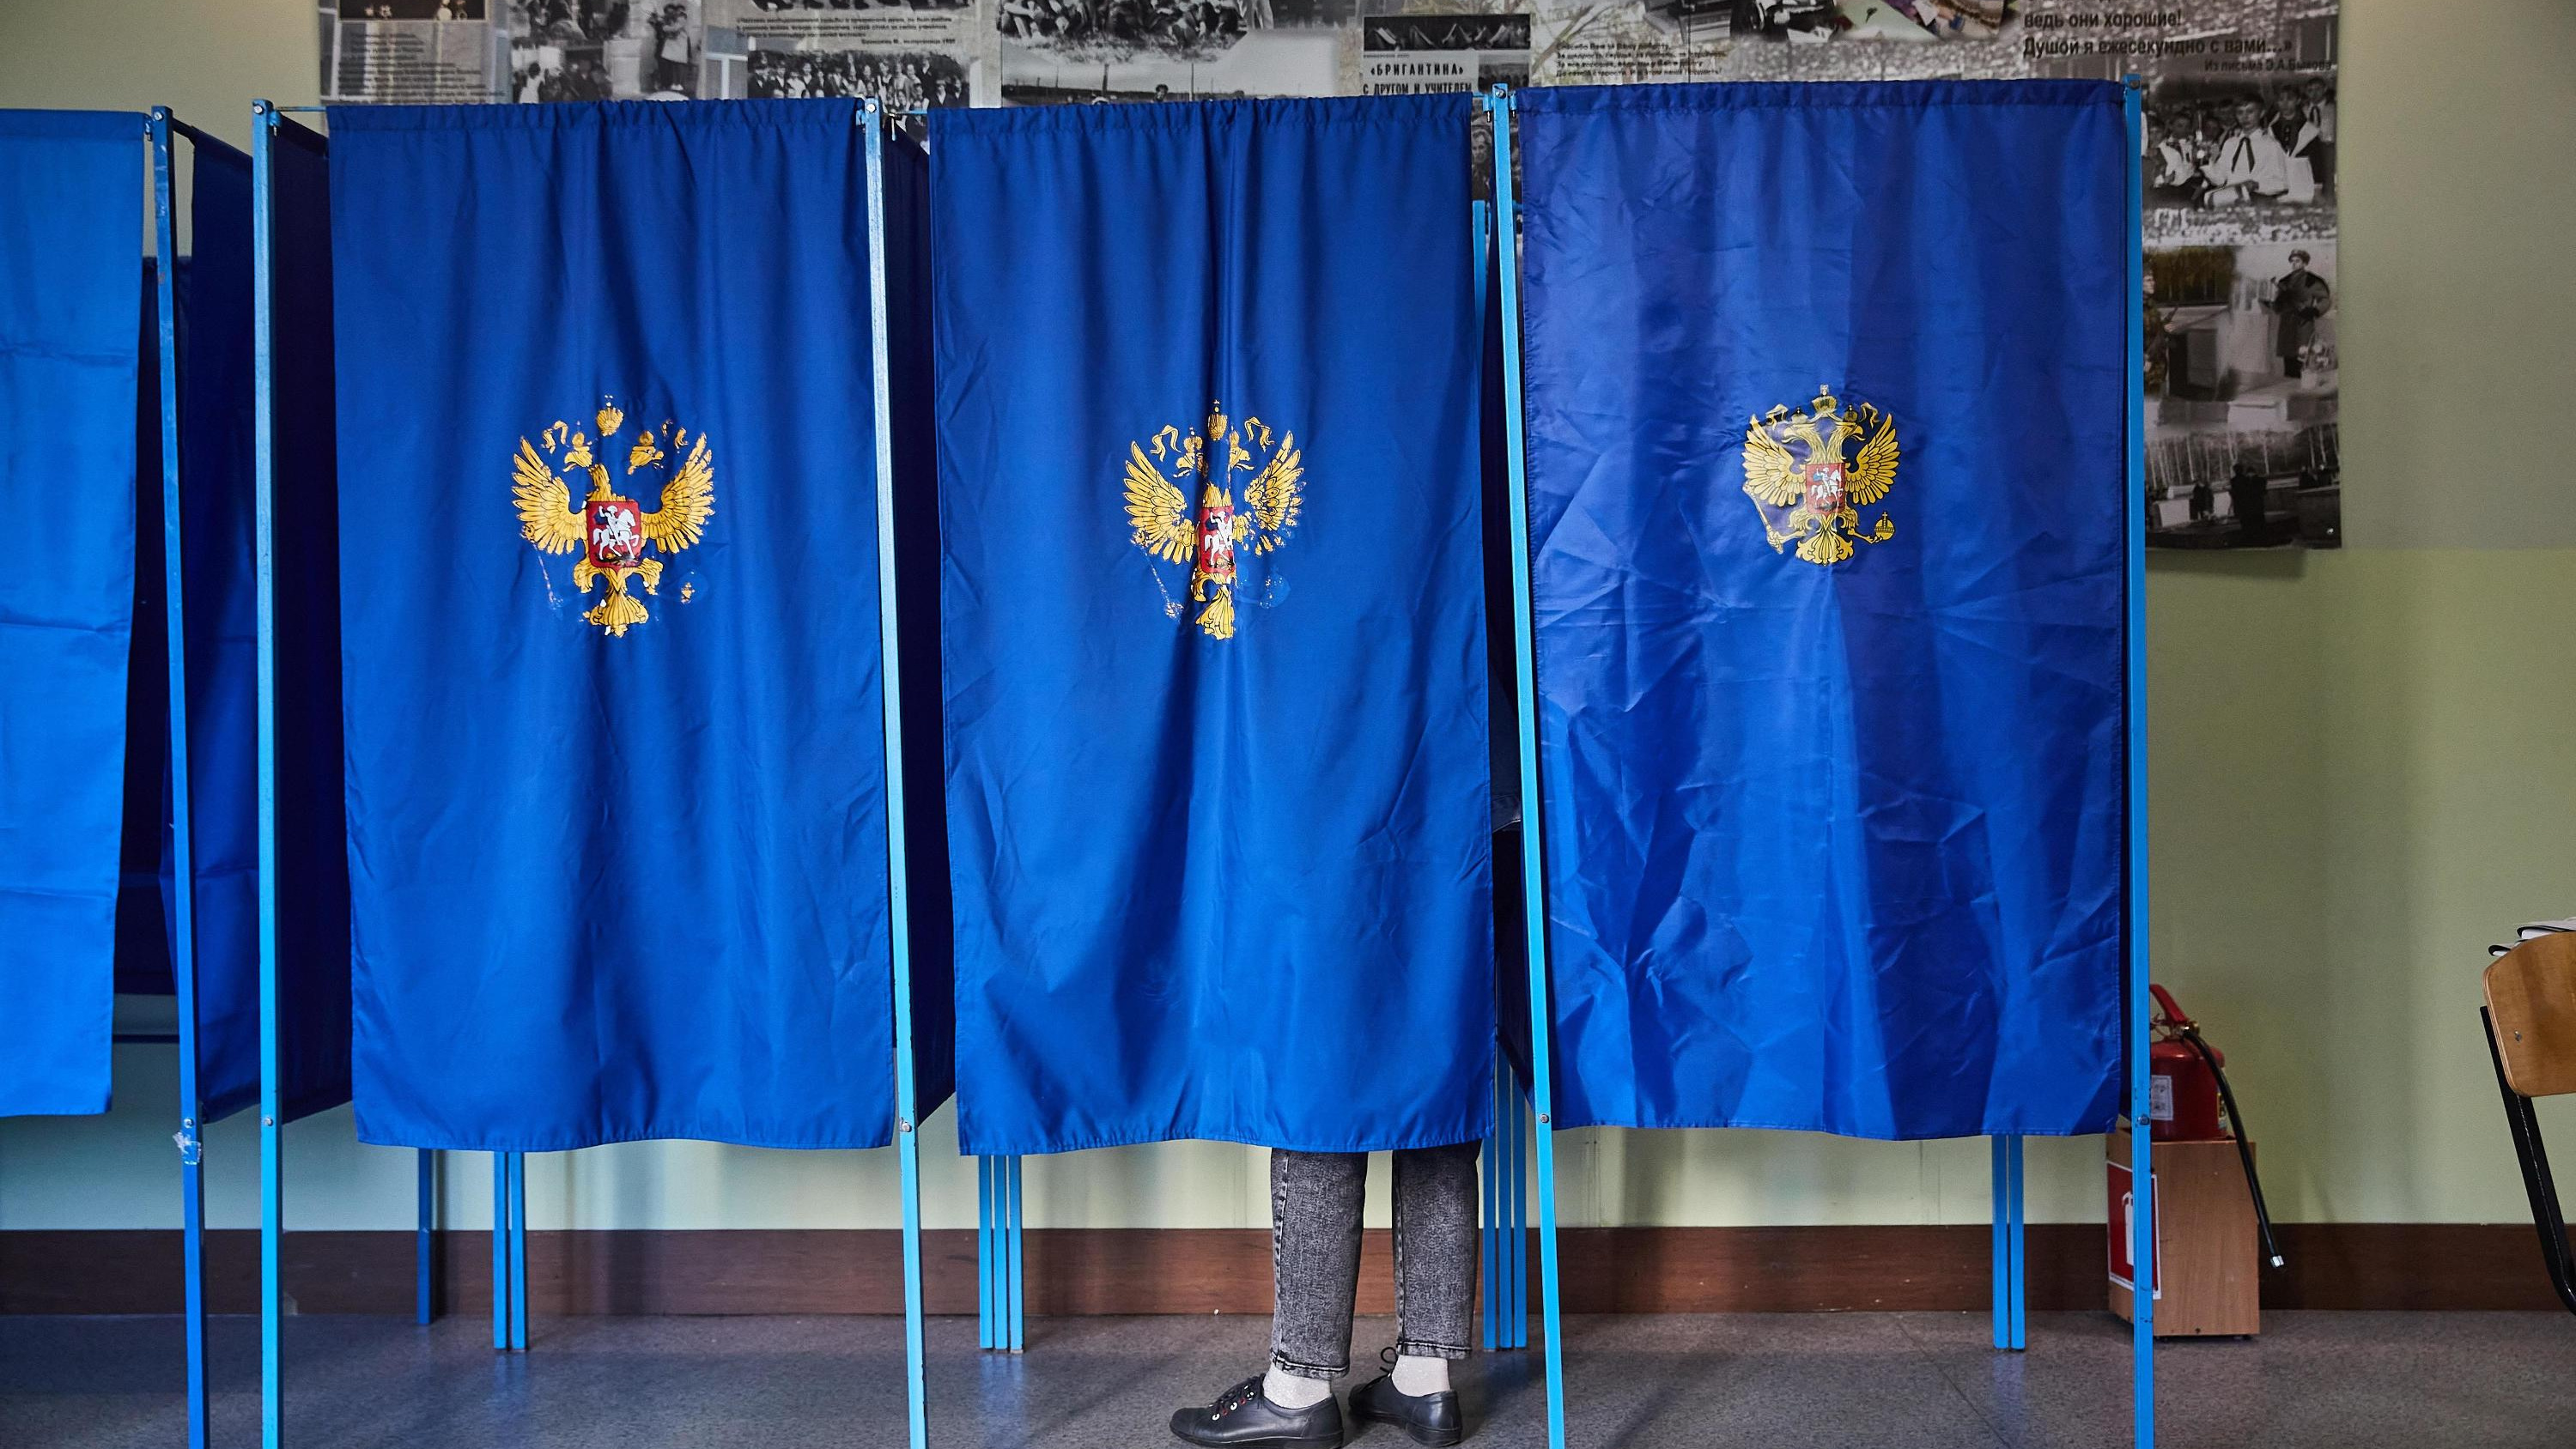 Член избиркома публично усомнился в законности выборов в Ростовской области